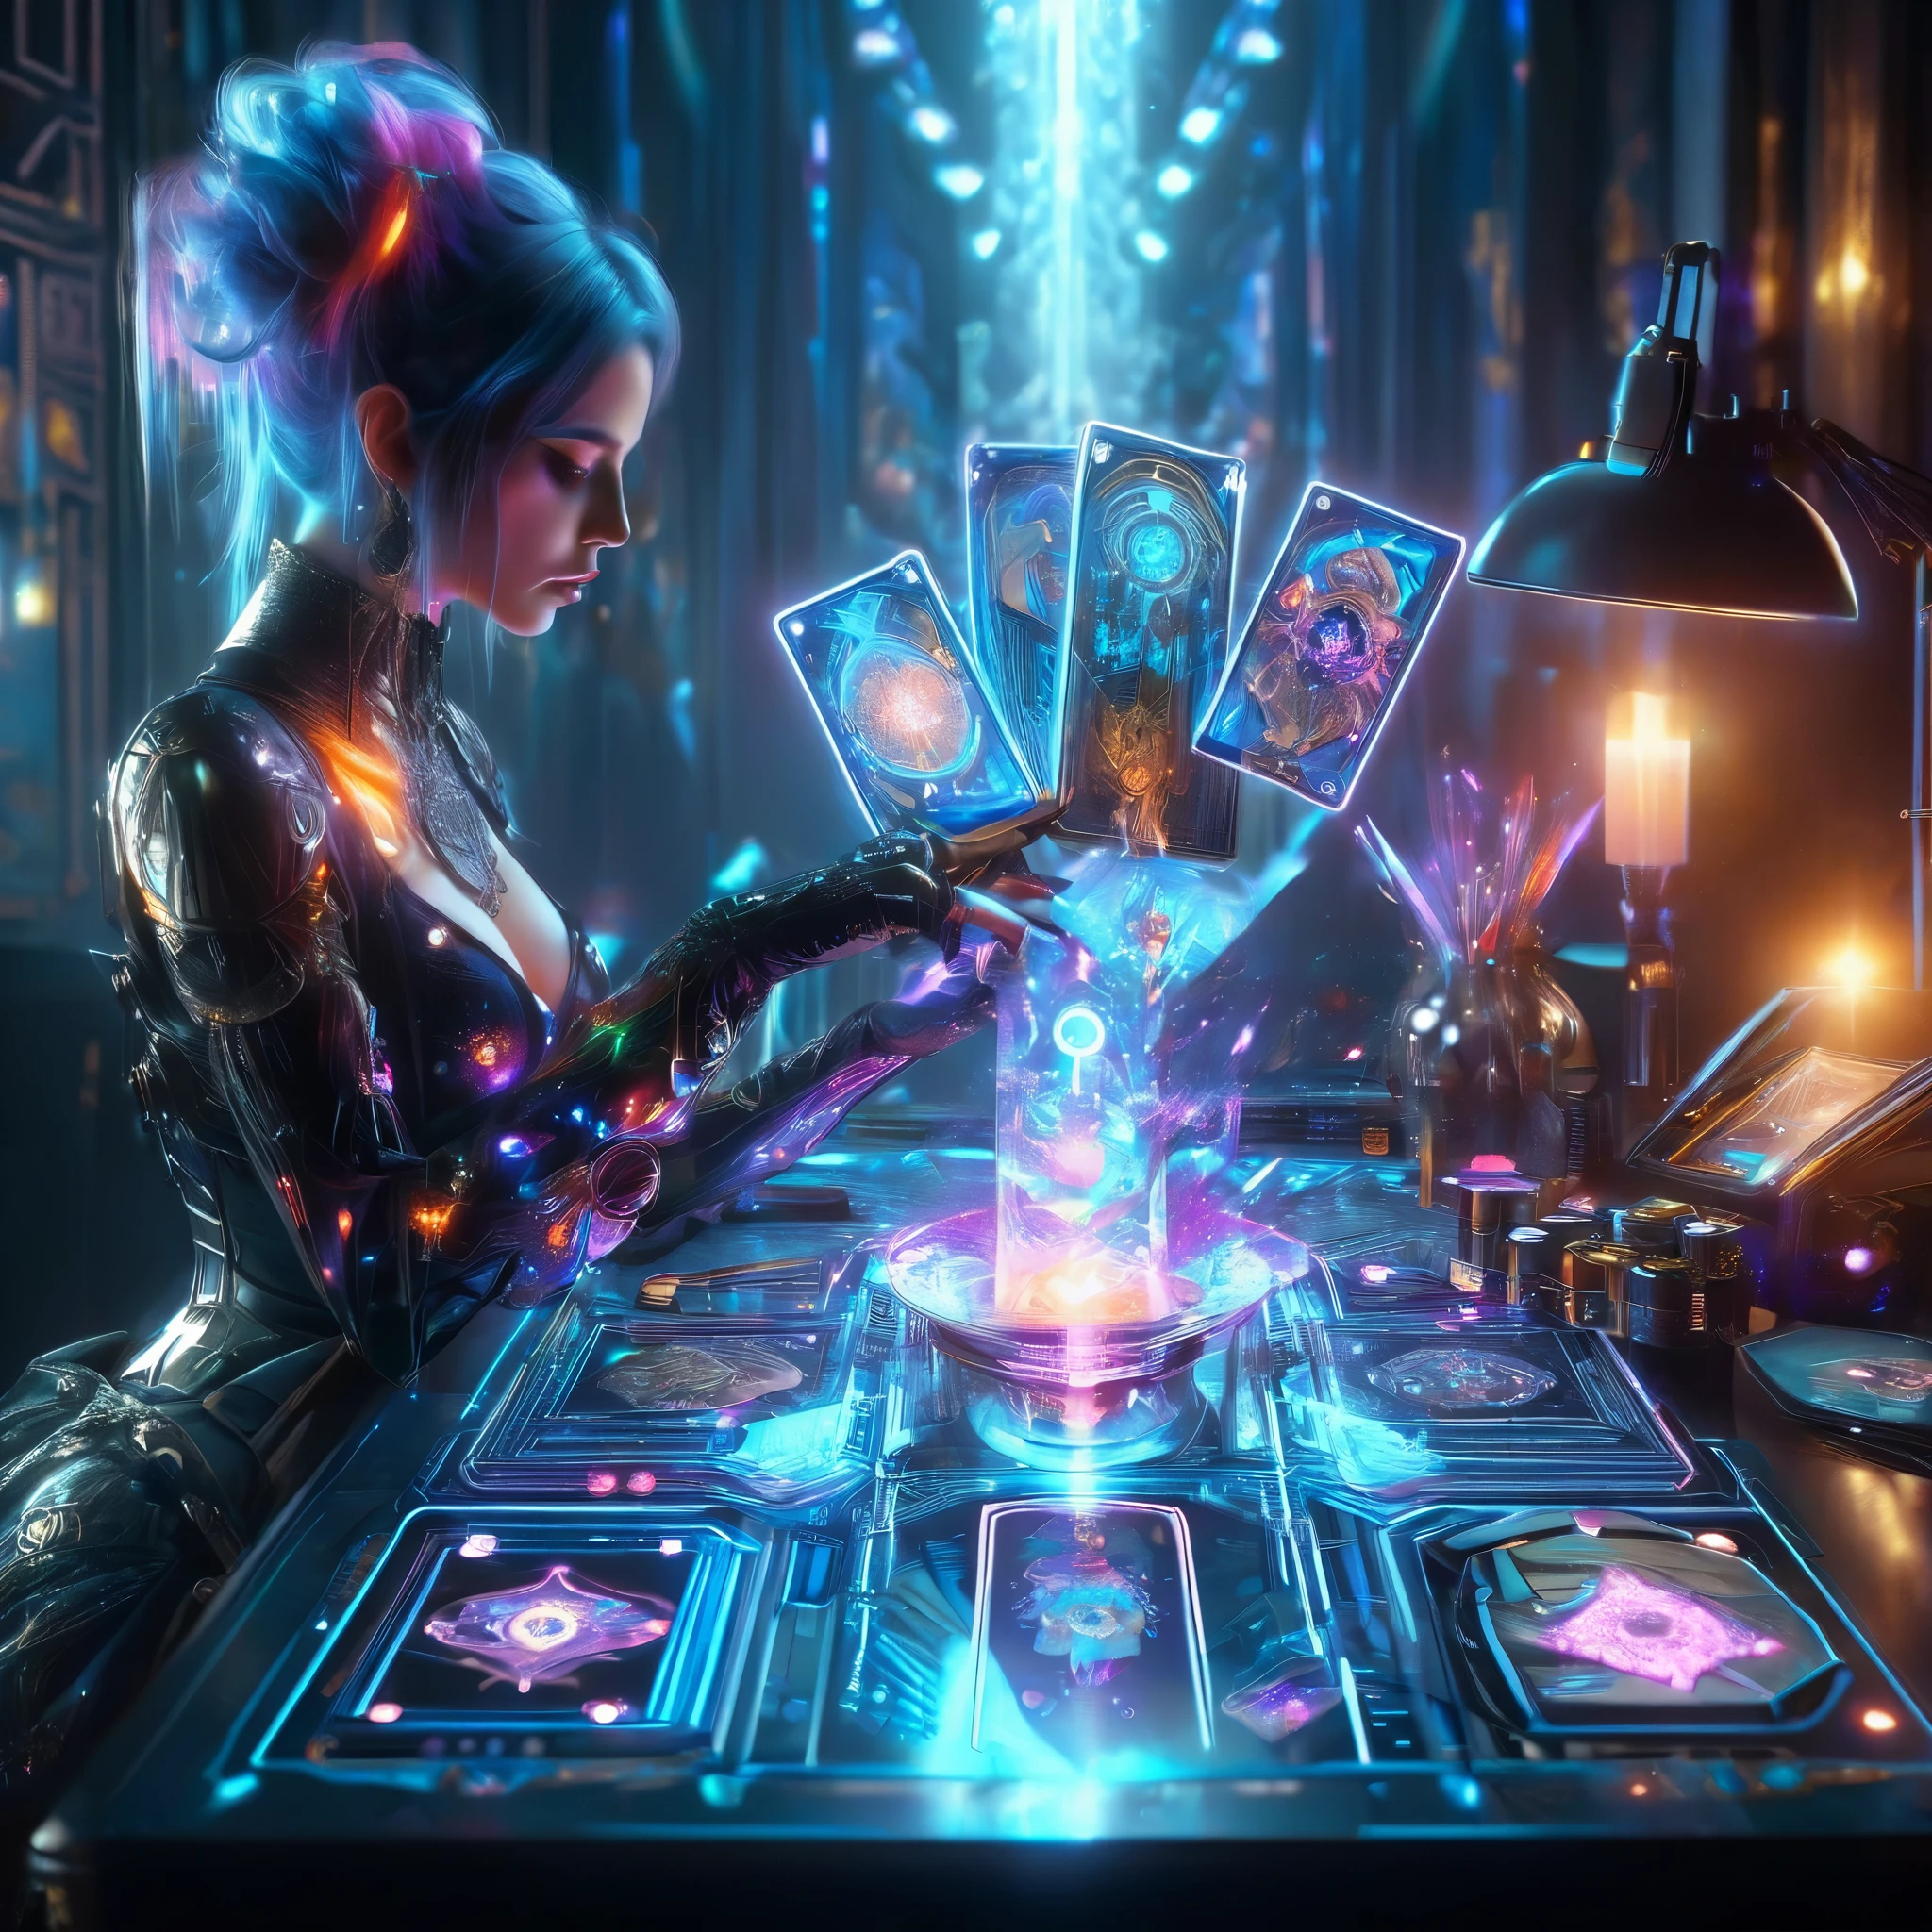 (타로 카드), 현실적인 digital painting, a woman in a futuristic suit playing holographic 타로 카드 on a electronc table,, 미래 세계의 어두운 신비로운 방, cybertable with modern big holographic 타로 카드,, 아름다운 여인 (문신, 사이버펑크 점쟁이 복장, 다채로운 비대칭 헤어스타일, 사이버네틱 팔) ,  사이버펑크 예술 스타일, 사이버펑크 다크 판타지, unfolded big 타로 카드 are visible on the table, 암실, 현실적인, 많은 세부 사항, 8K, 필름 그레인, RAW 사진,